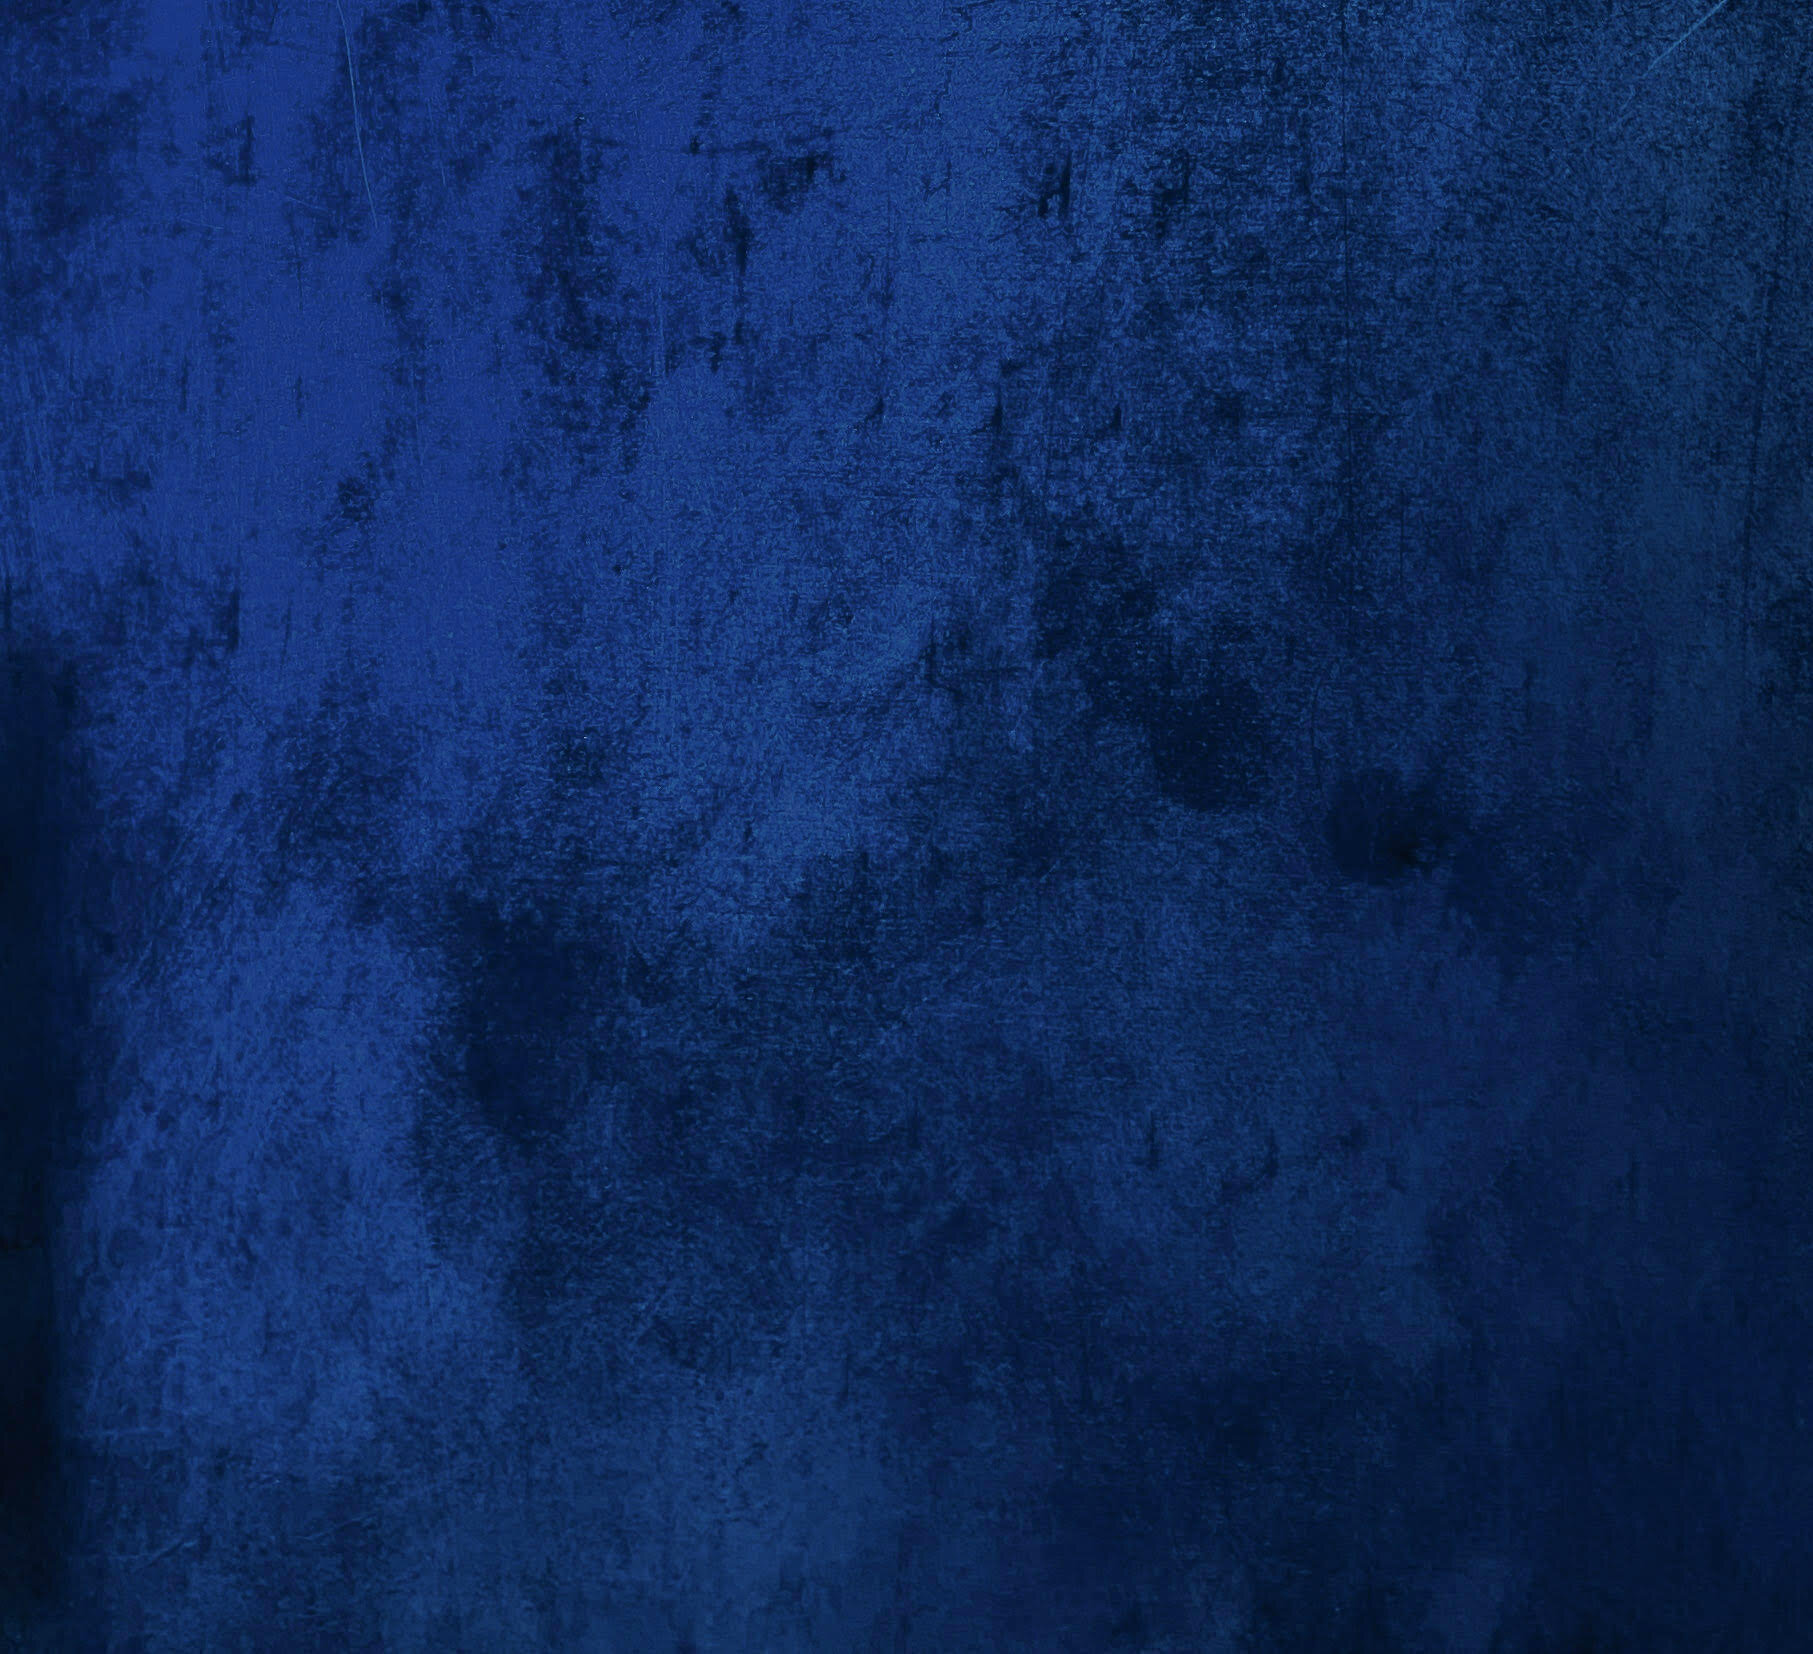 Notre sélection d'images aesthetic bleu - Grunge Clothing